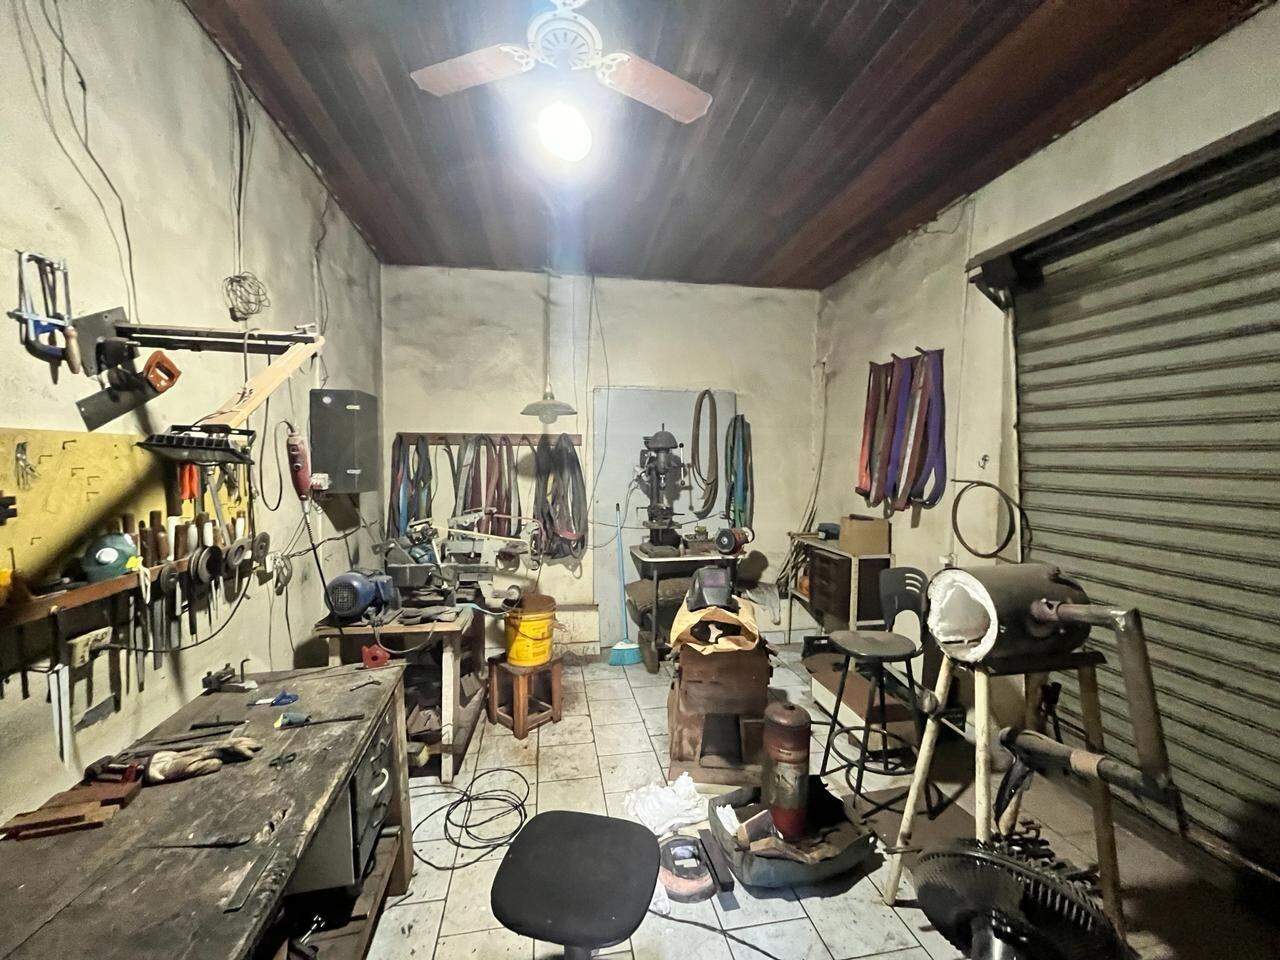 Casa à venda, 3 quartos, 3 vagas, no bairro Artemis em Piracicaba - SP